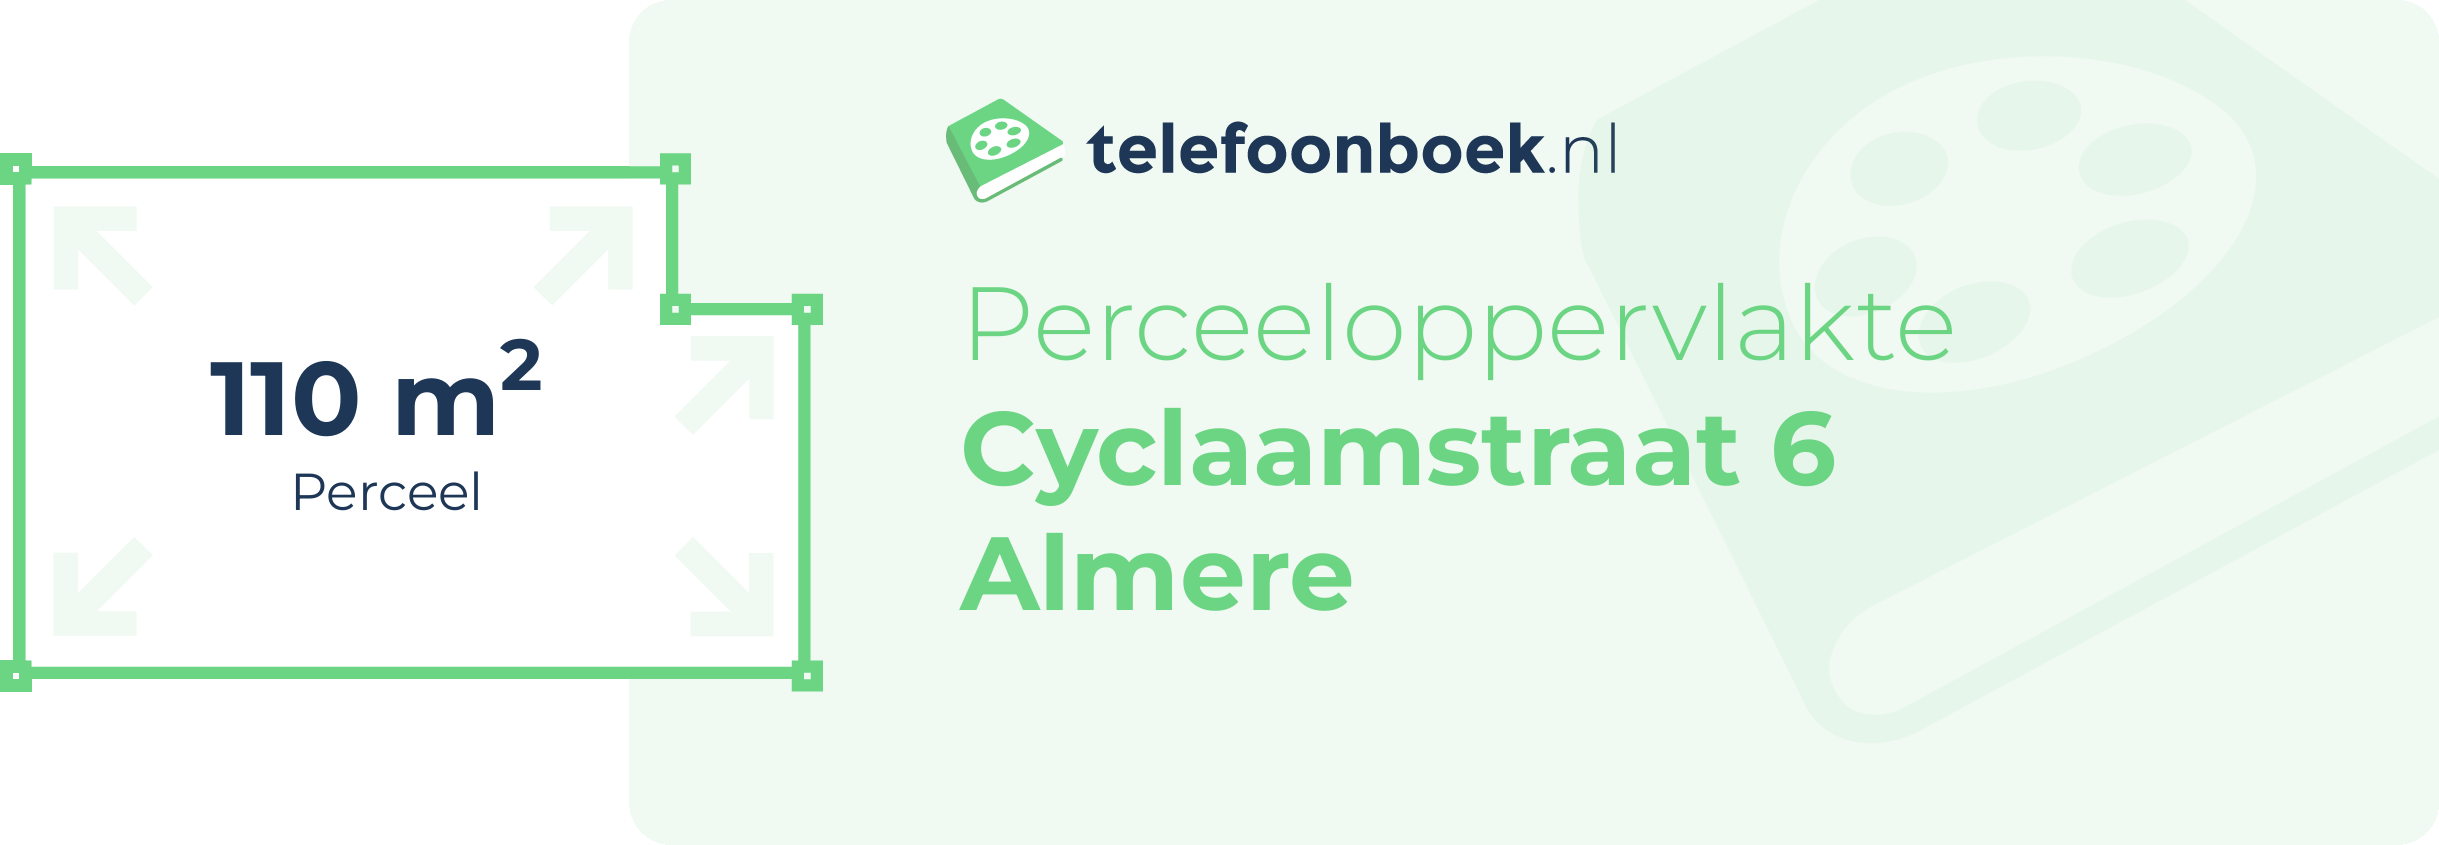 Perceeloppervlakte Cyclaamstraat 6 Almere